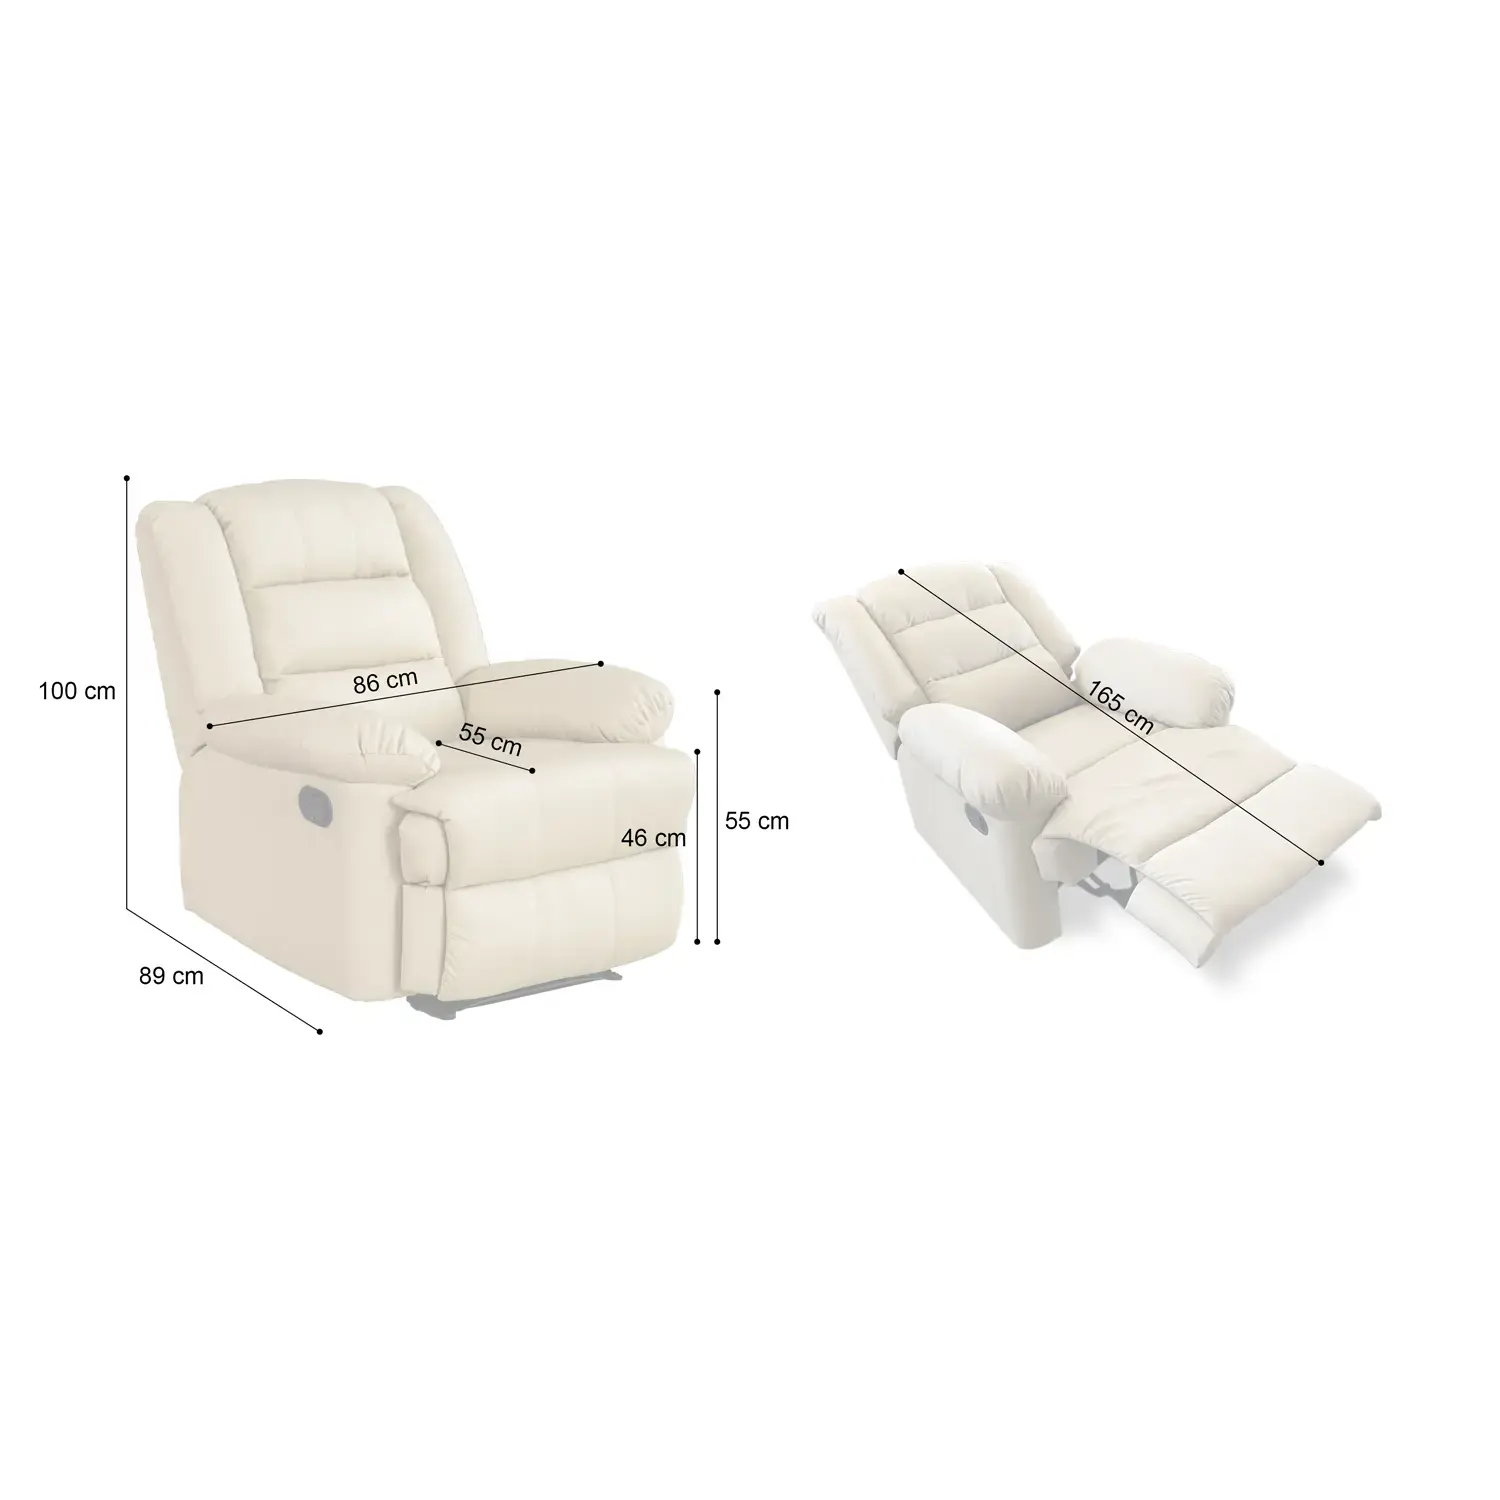 Fekvőfotel, relax fotelágy elektromosan dönthető háttámlával, lábtartóval szürke szövet (8002-ELEC-FAB-GREY)